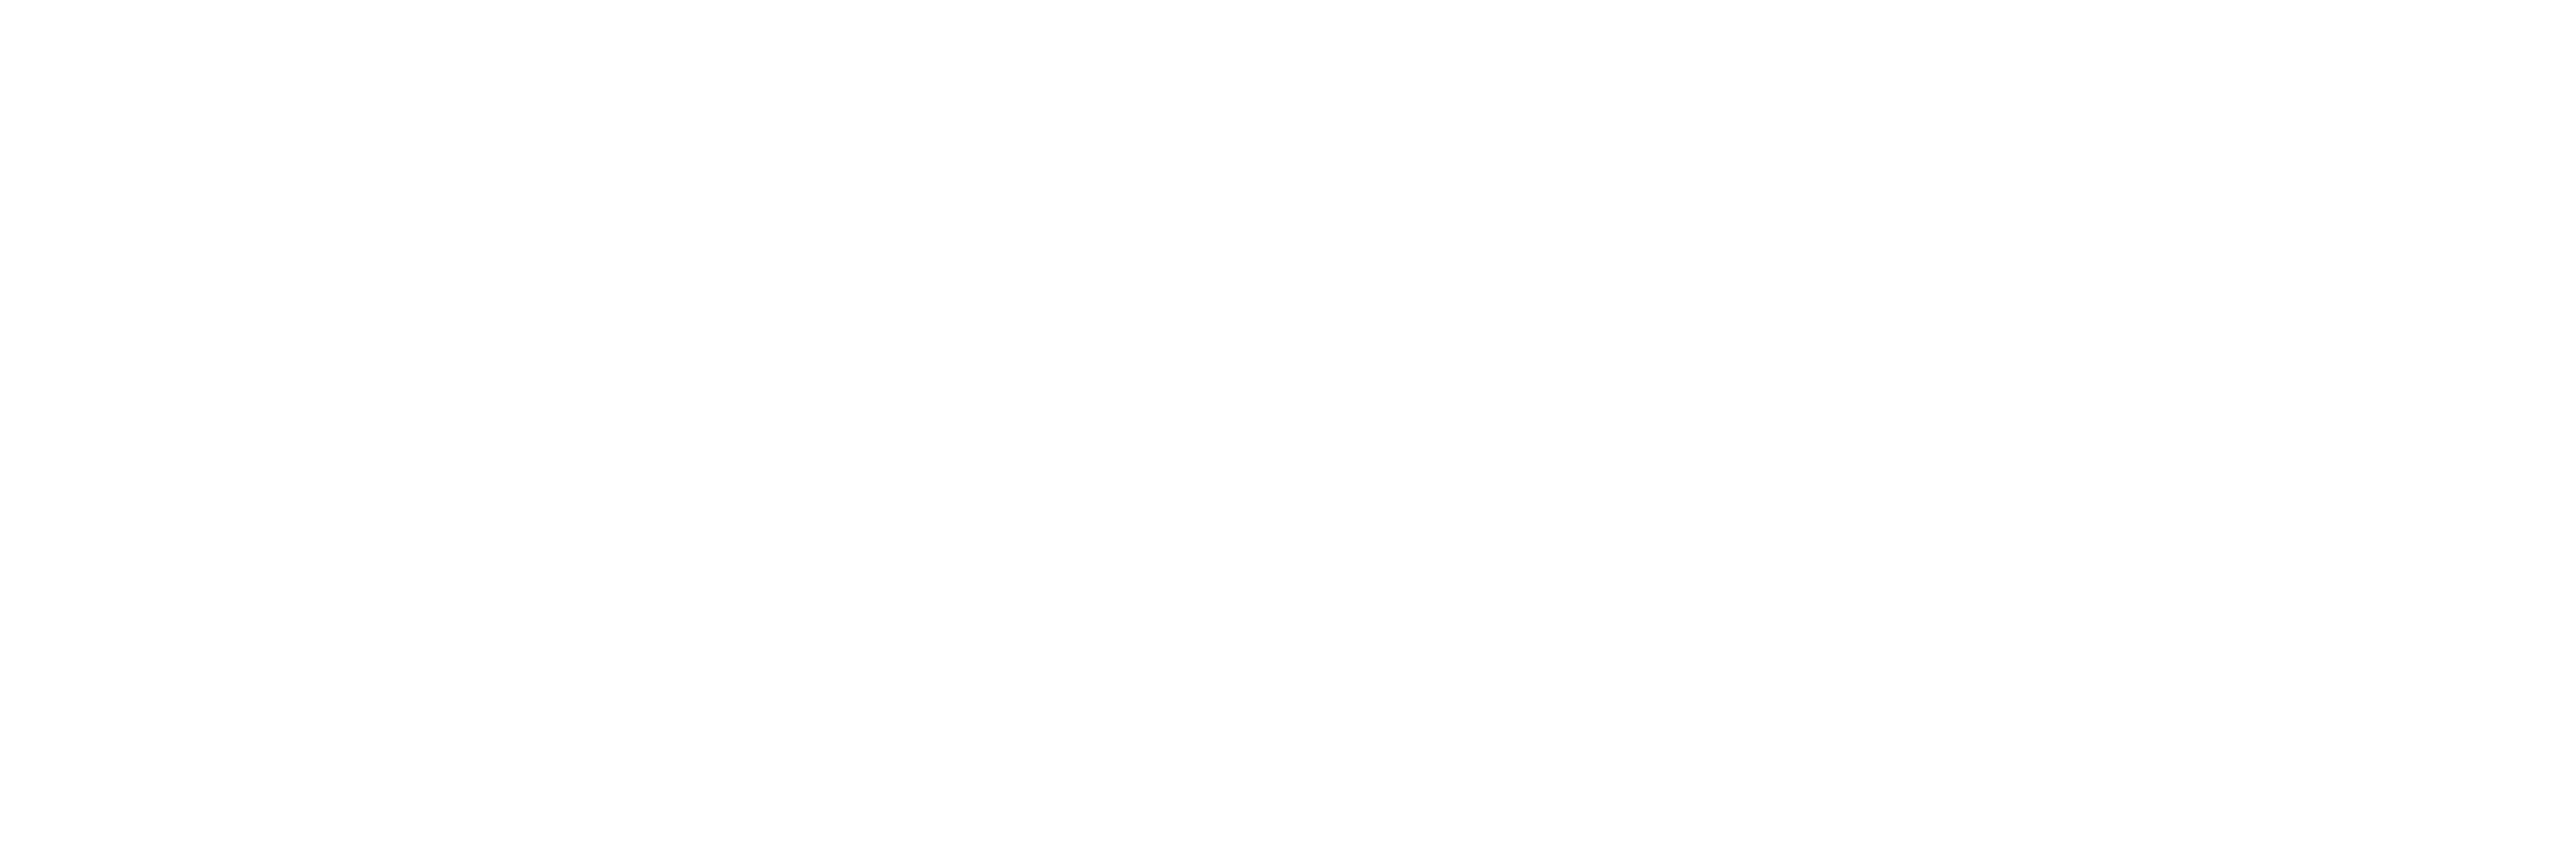 Eesti ehitab ehitusmess